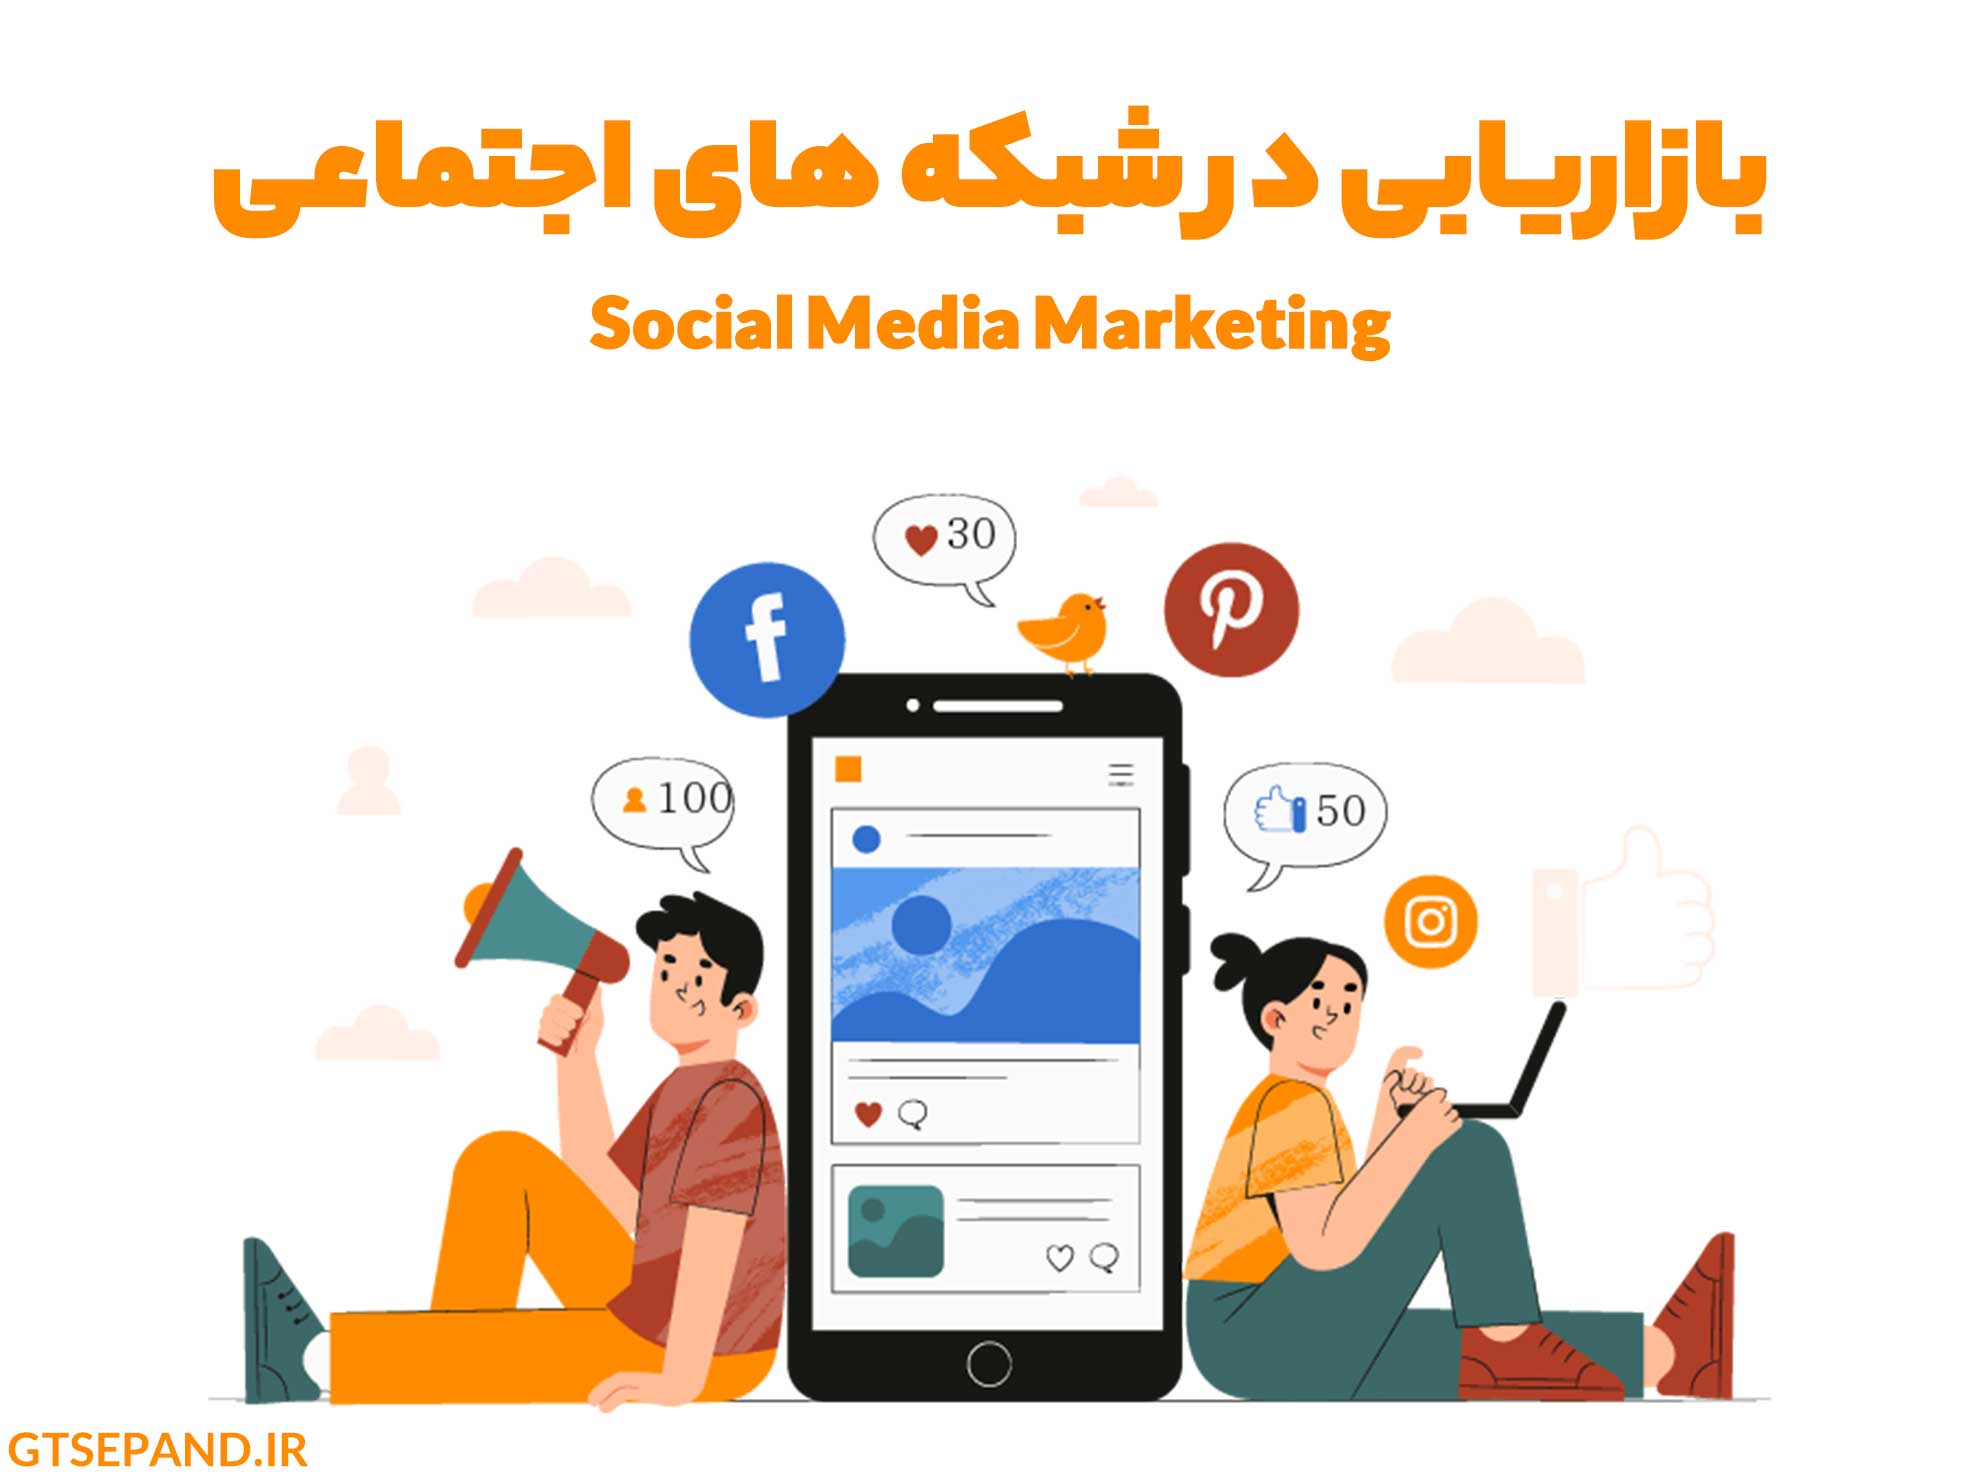 راهنمای جامع بازاریابی در شبکه های اجتماعی + معرفی 4 سایت آموزش بازاریابی شبکه های اجتماعی